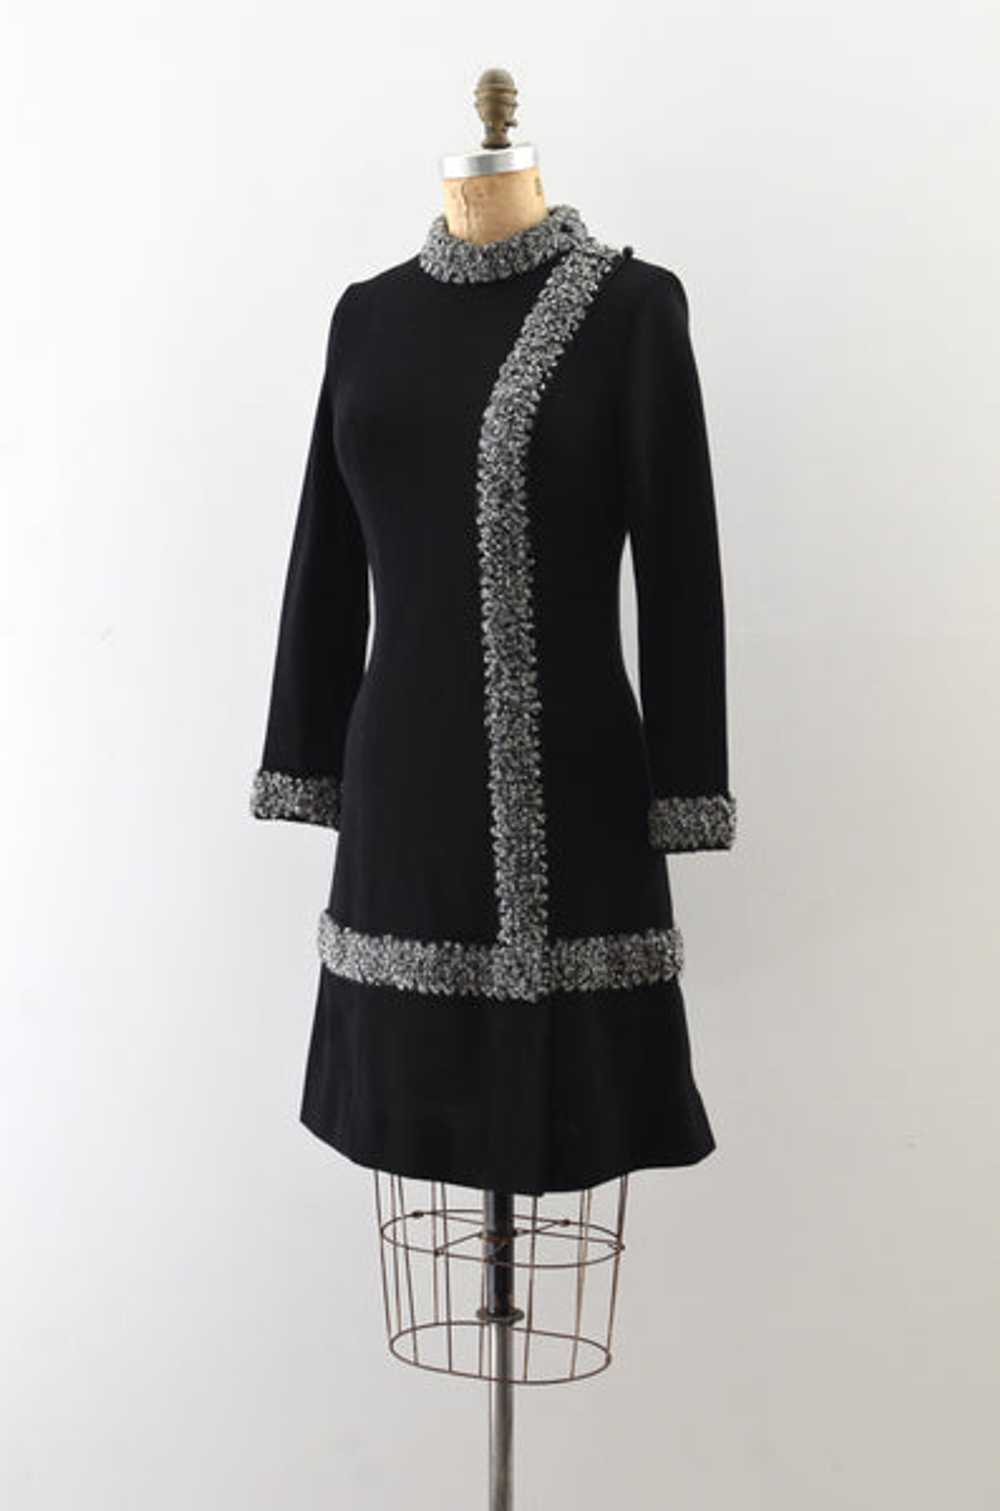 Vintage 1960s Black Knit Dress - image 4